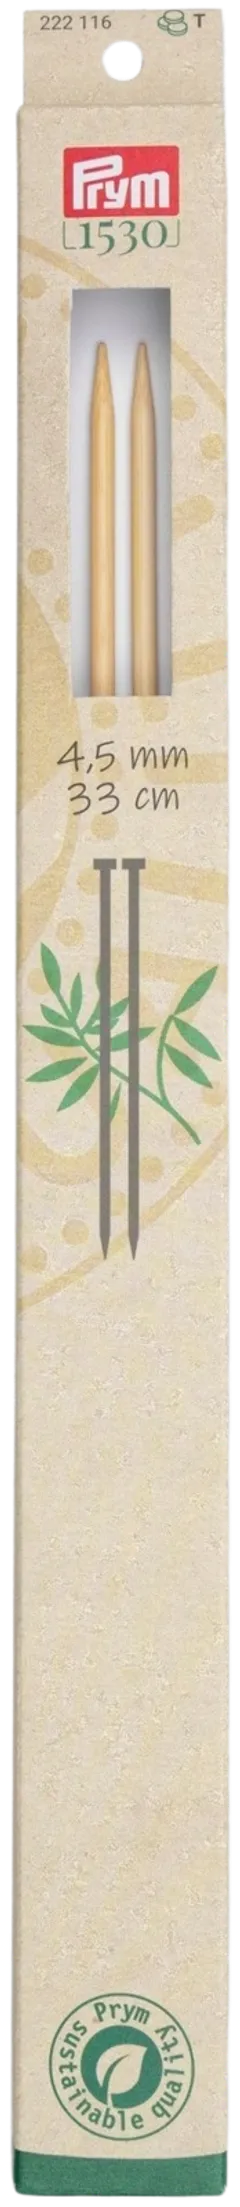 Prym neulepuikko 4,5 33cm bambu - 1